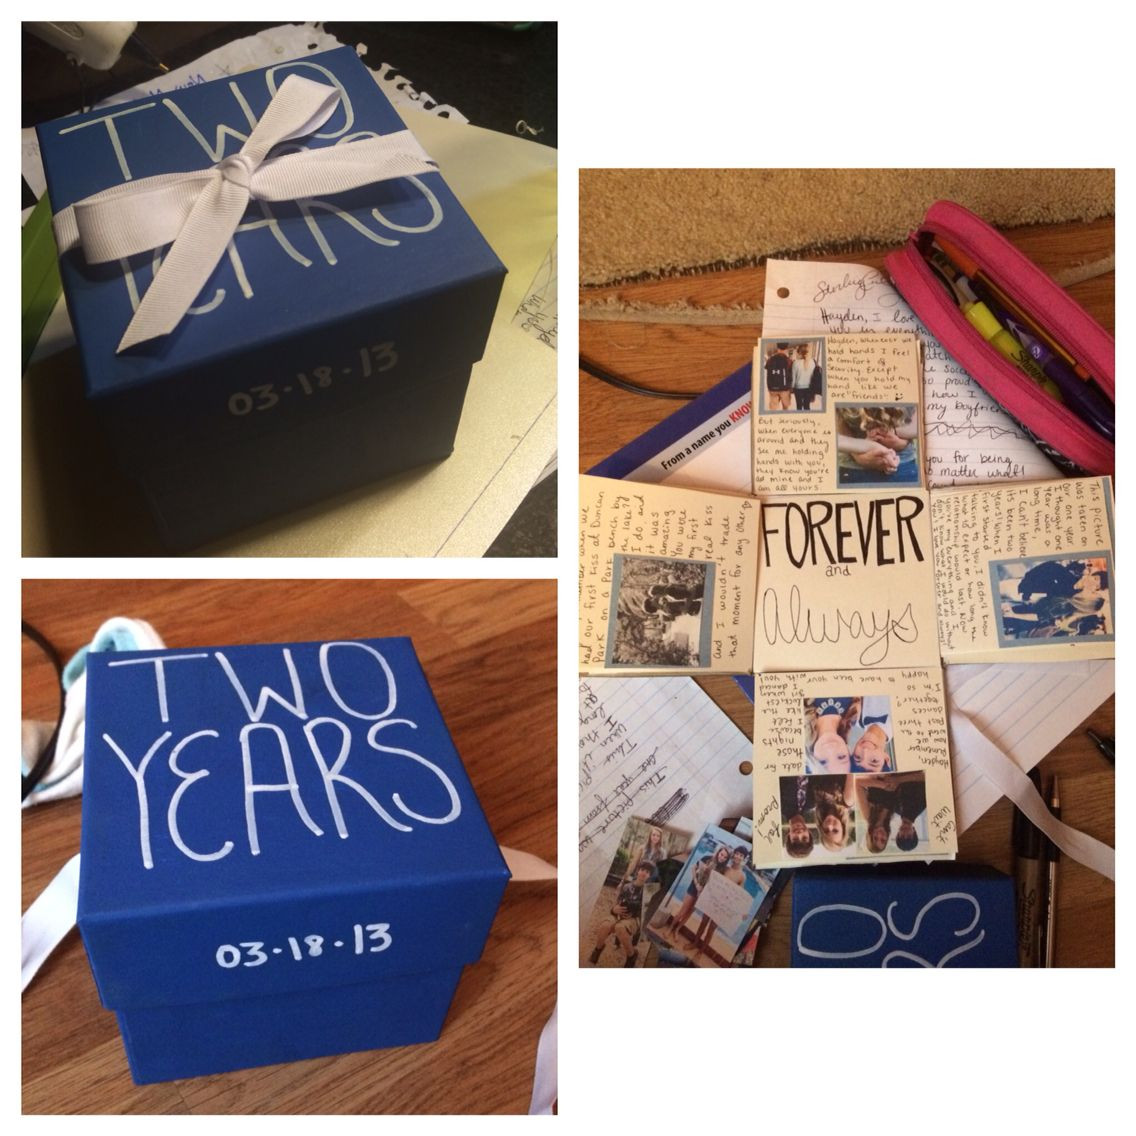 2 Year Anniversary Gift Ideas For Boyfriend
 Anniversary box For my boyfriend and I s 2 year I made